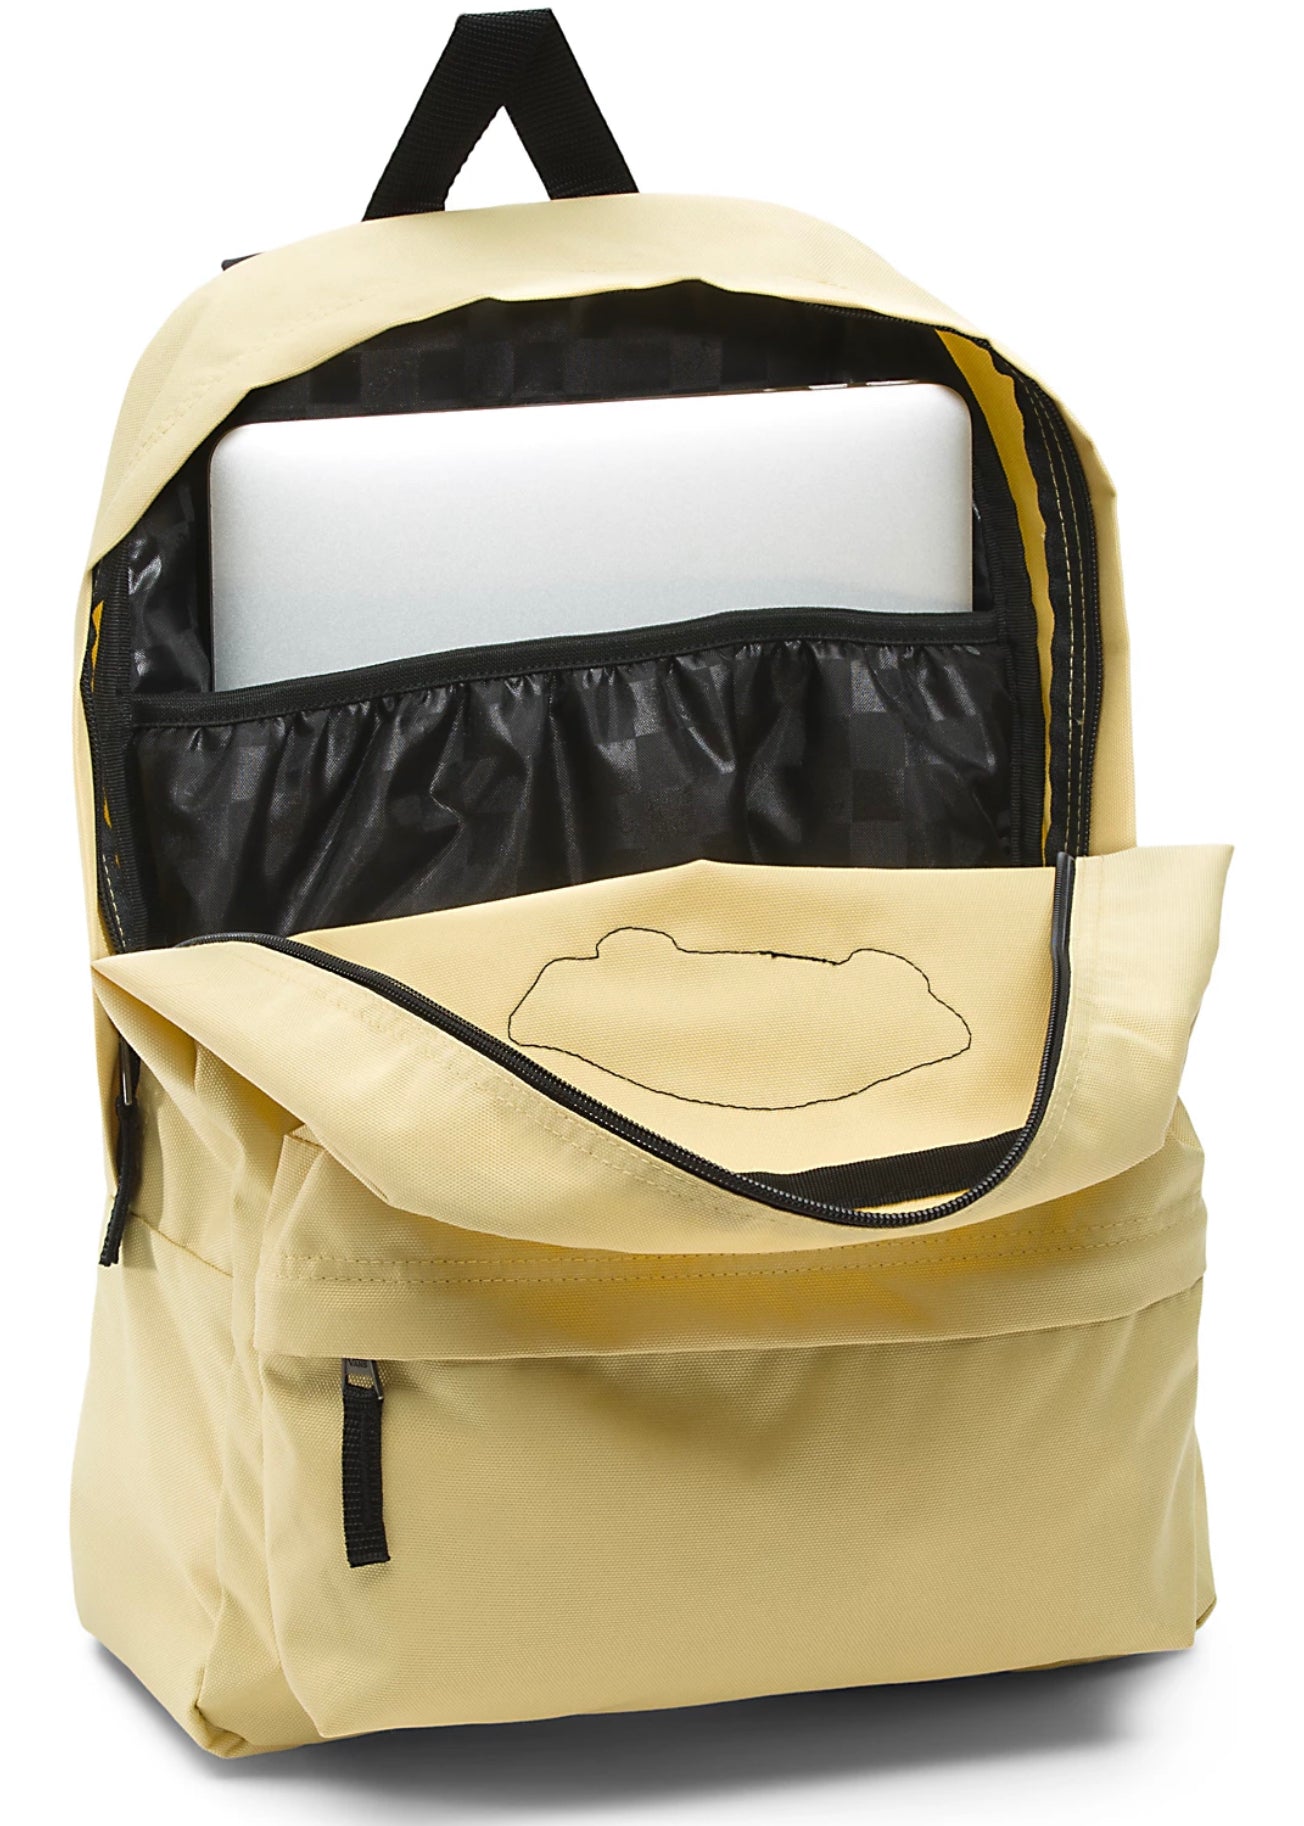 Vans - Realm Backpack